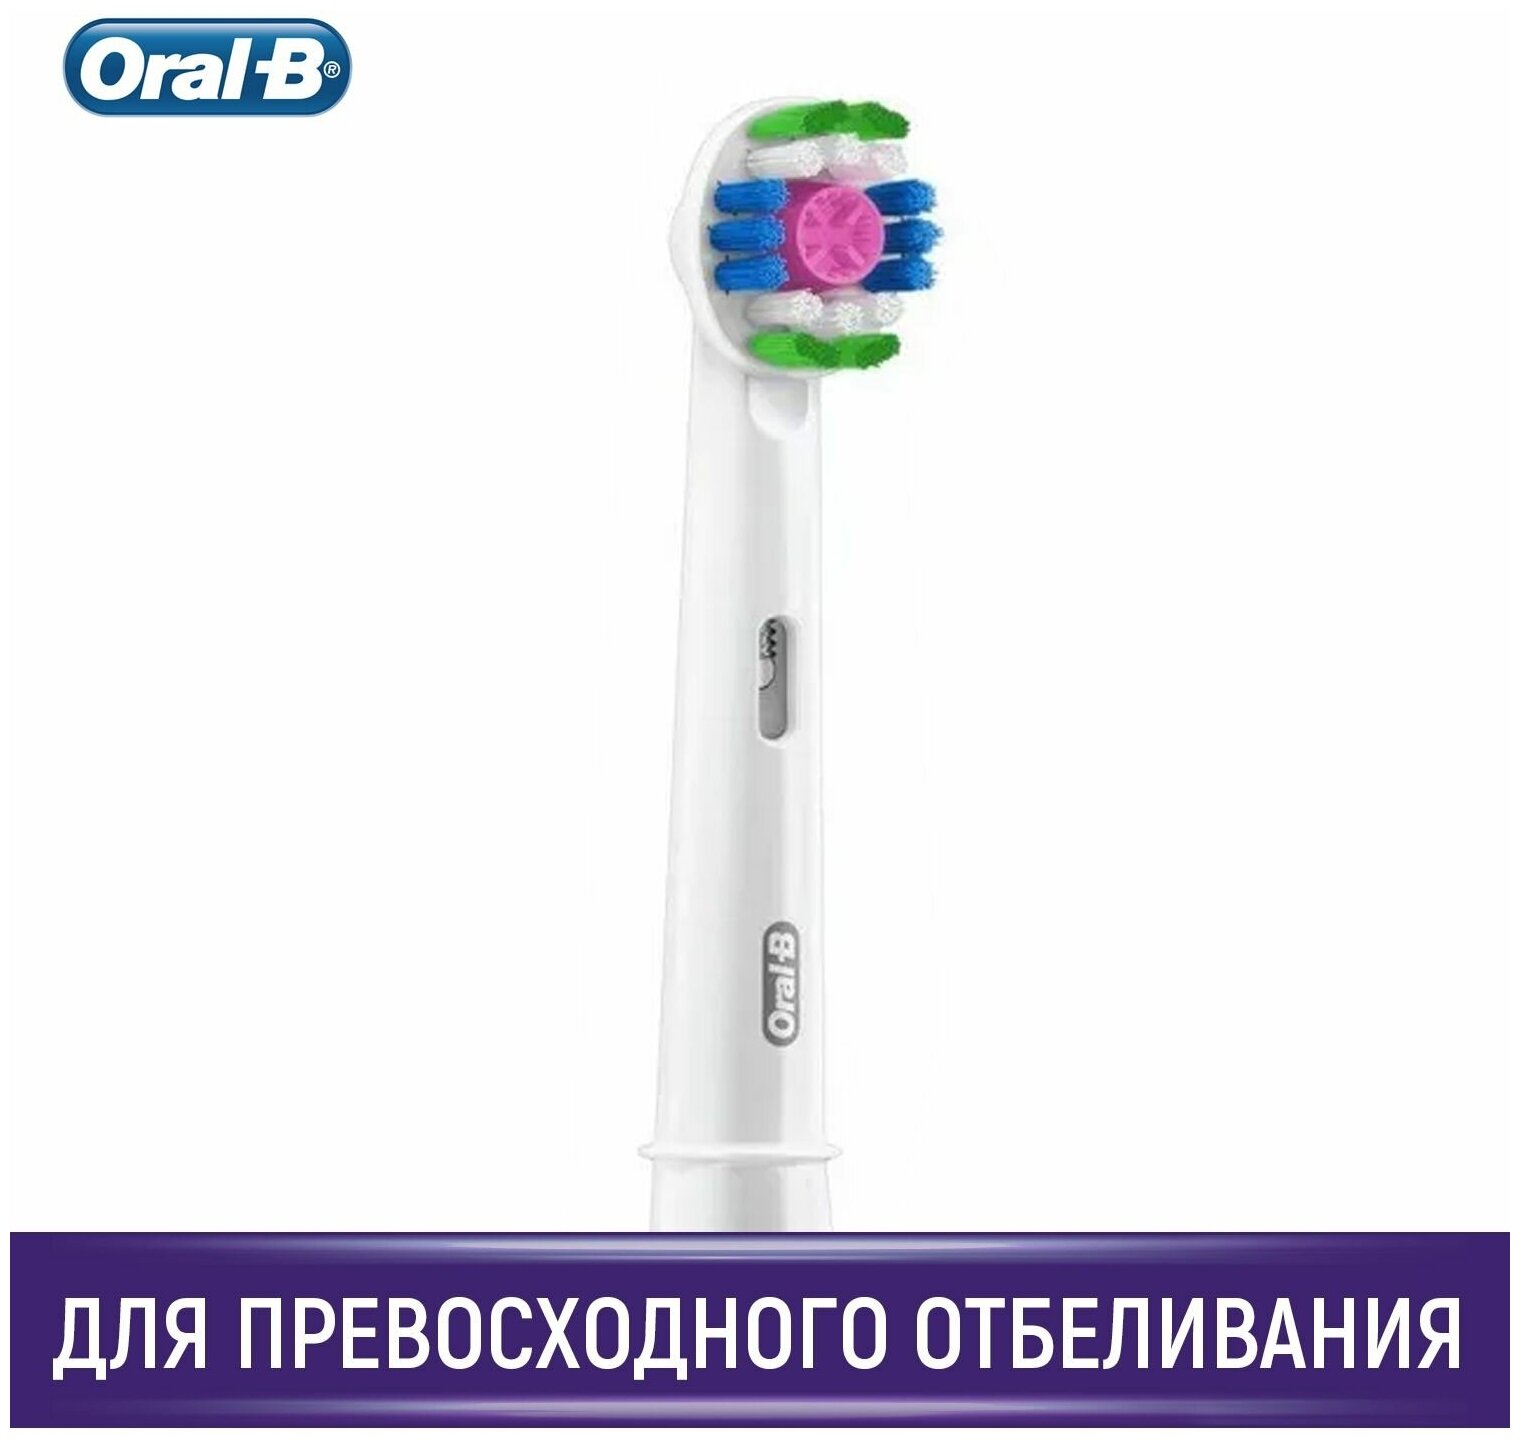     Oral-B,   1 ., 3D White CleanMaximiser EB18pRB,  